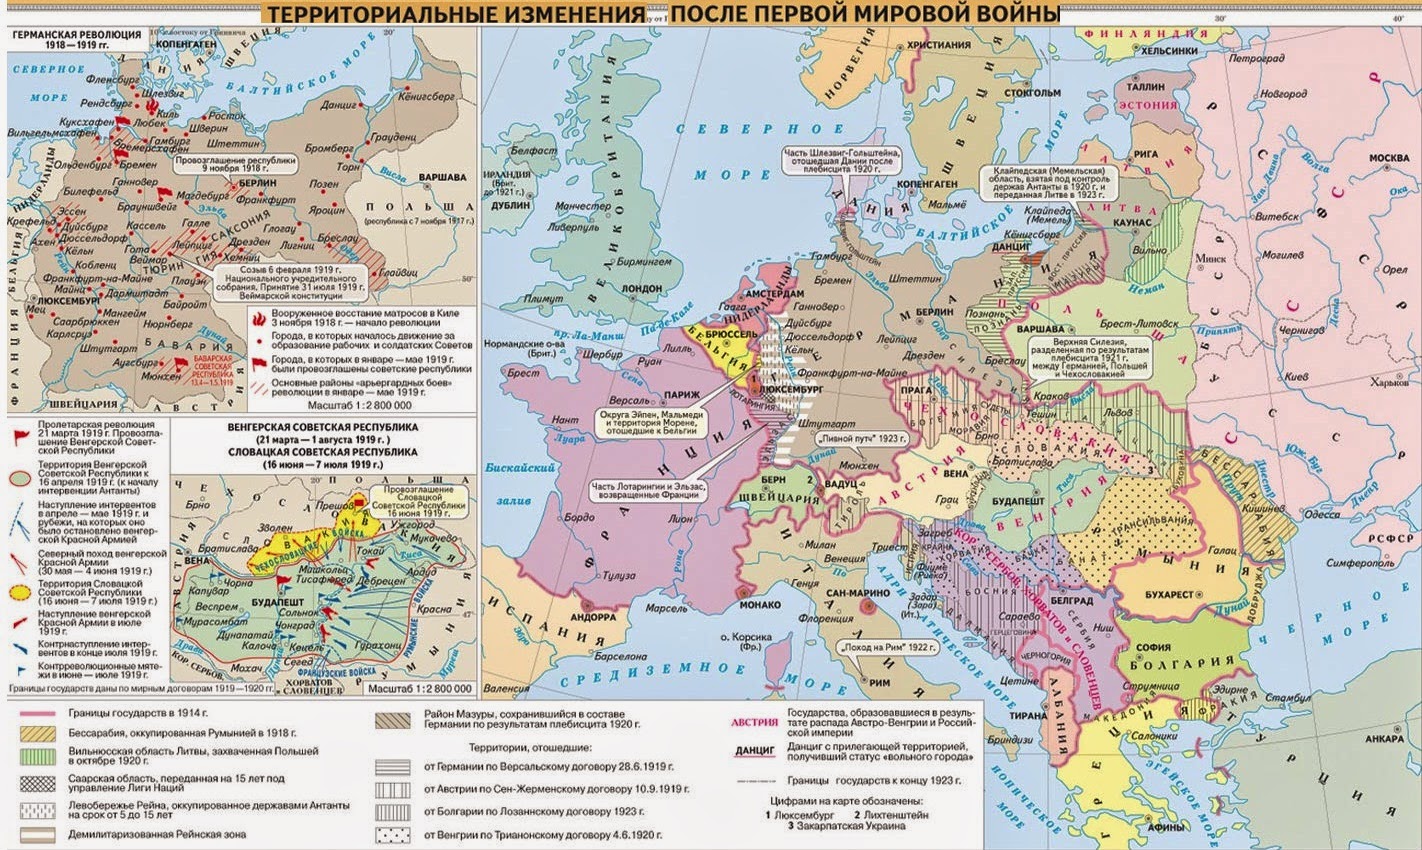 Как изменилось после 2 мировой войны. Границы государств после 1 мировой войны. Территориальные изменения в Европе после первой мировой войны. Западная Европа после первой мировой войны карта.